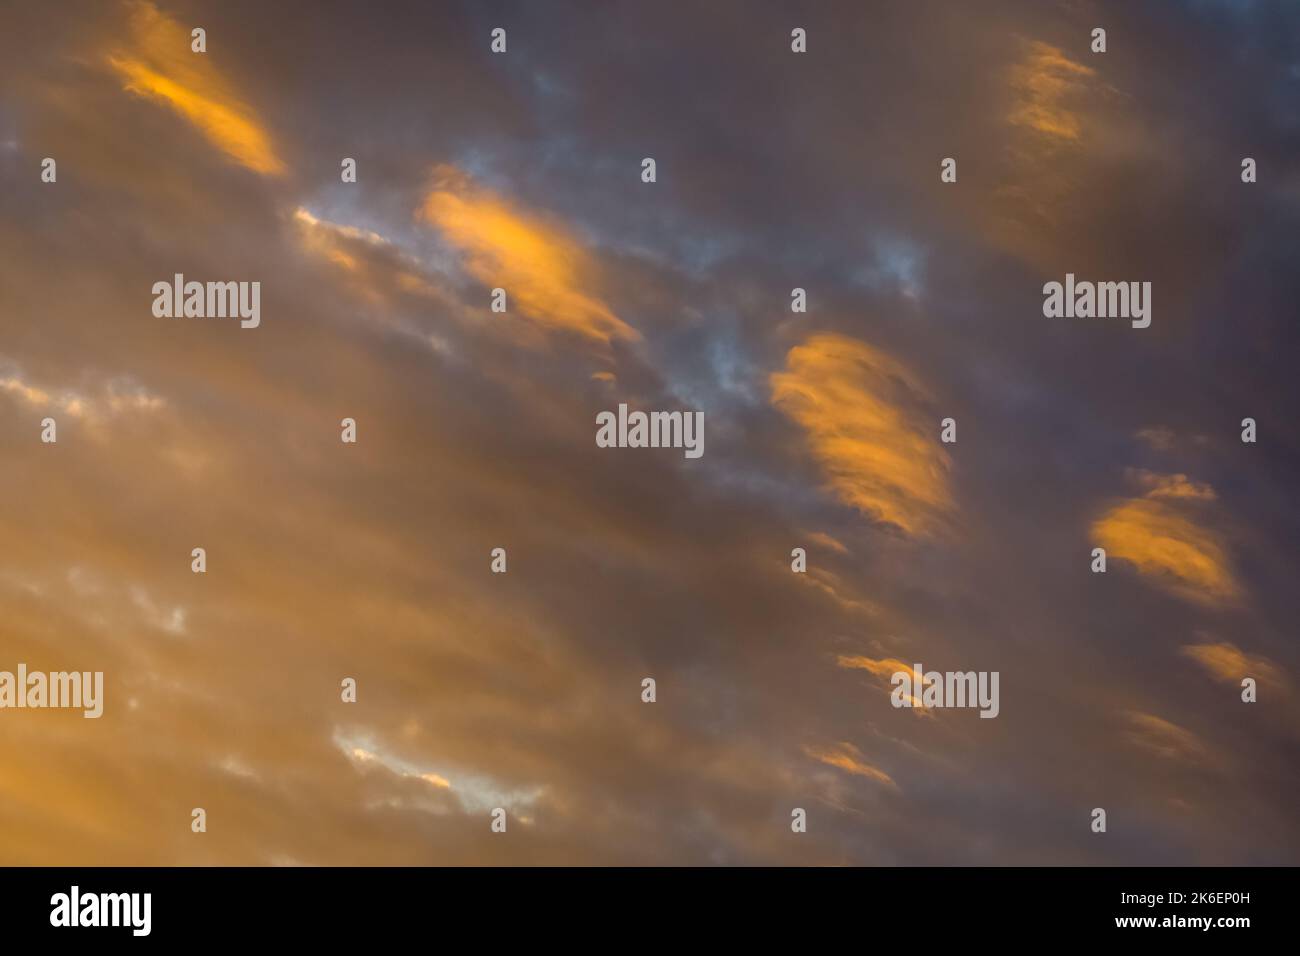 Amanecer espectacular cielo con nubes en una fila, colorido paisaje nublado Foto de stock